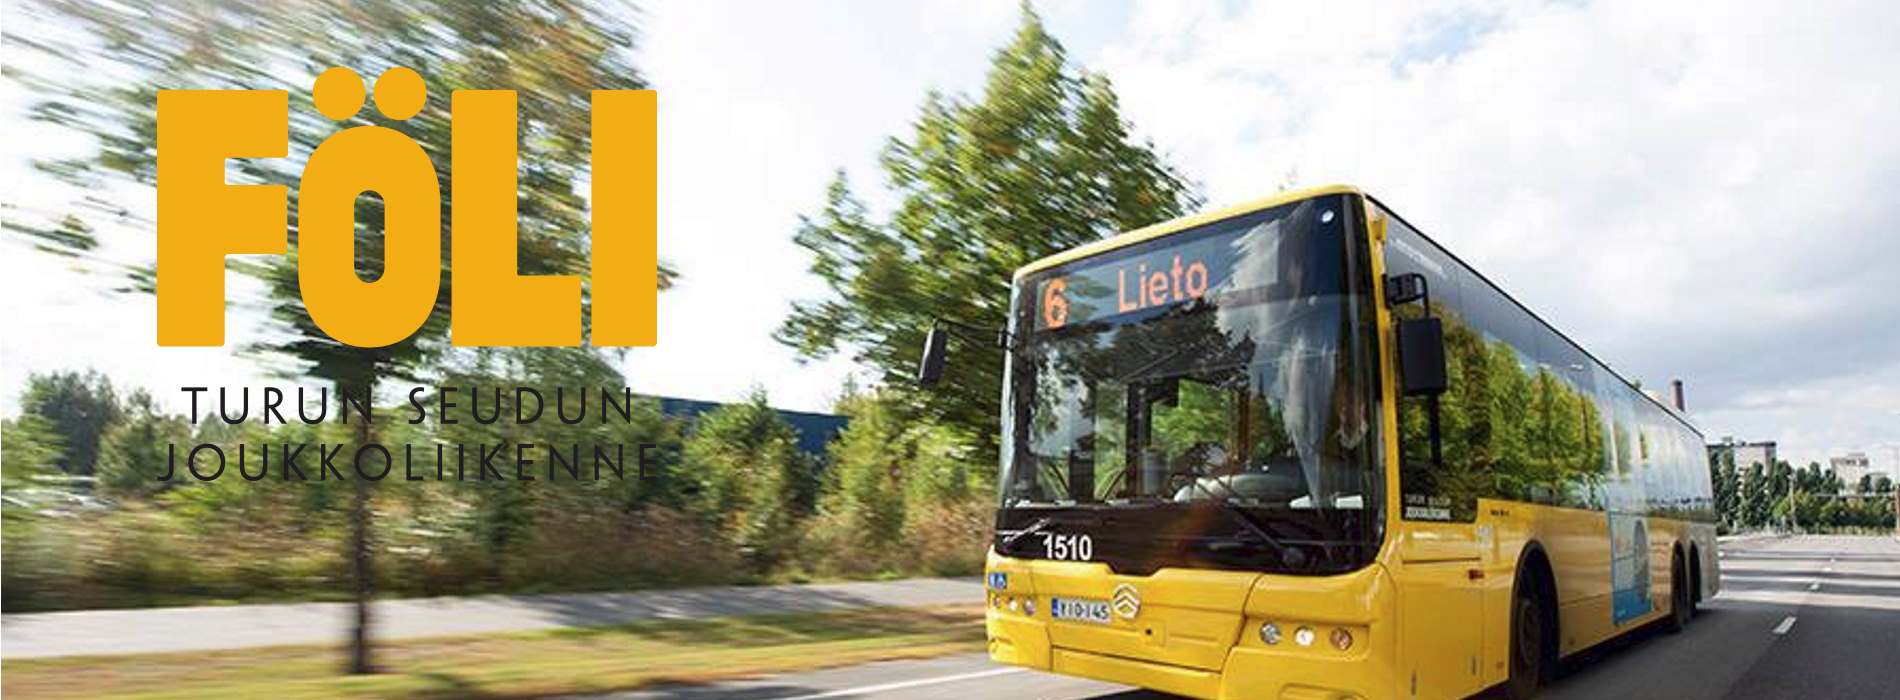 Föli: Ein einziges Ticket für multimodale Reisen und Veranstaltungen in der Region Turku